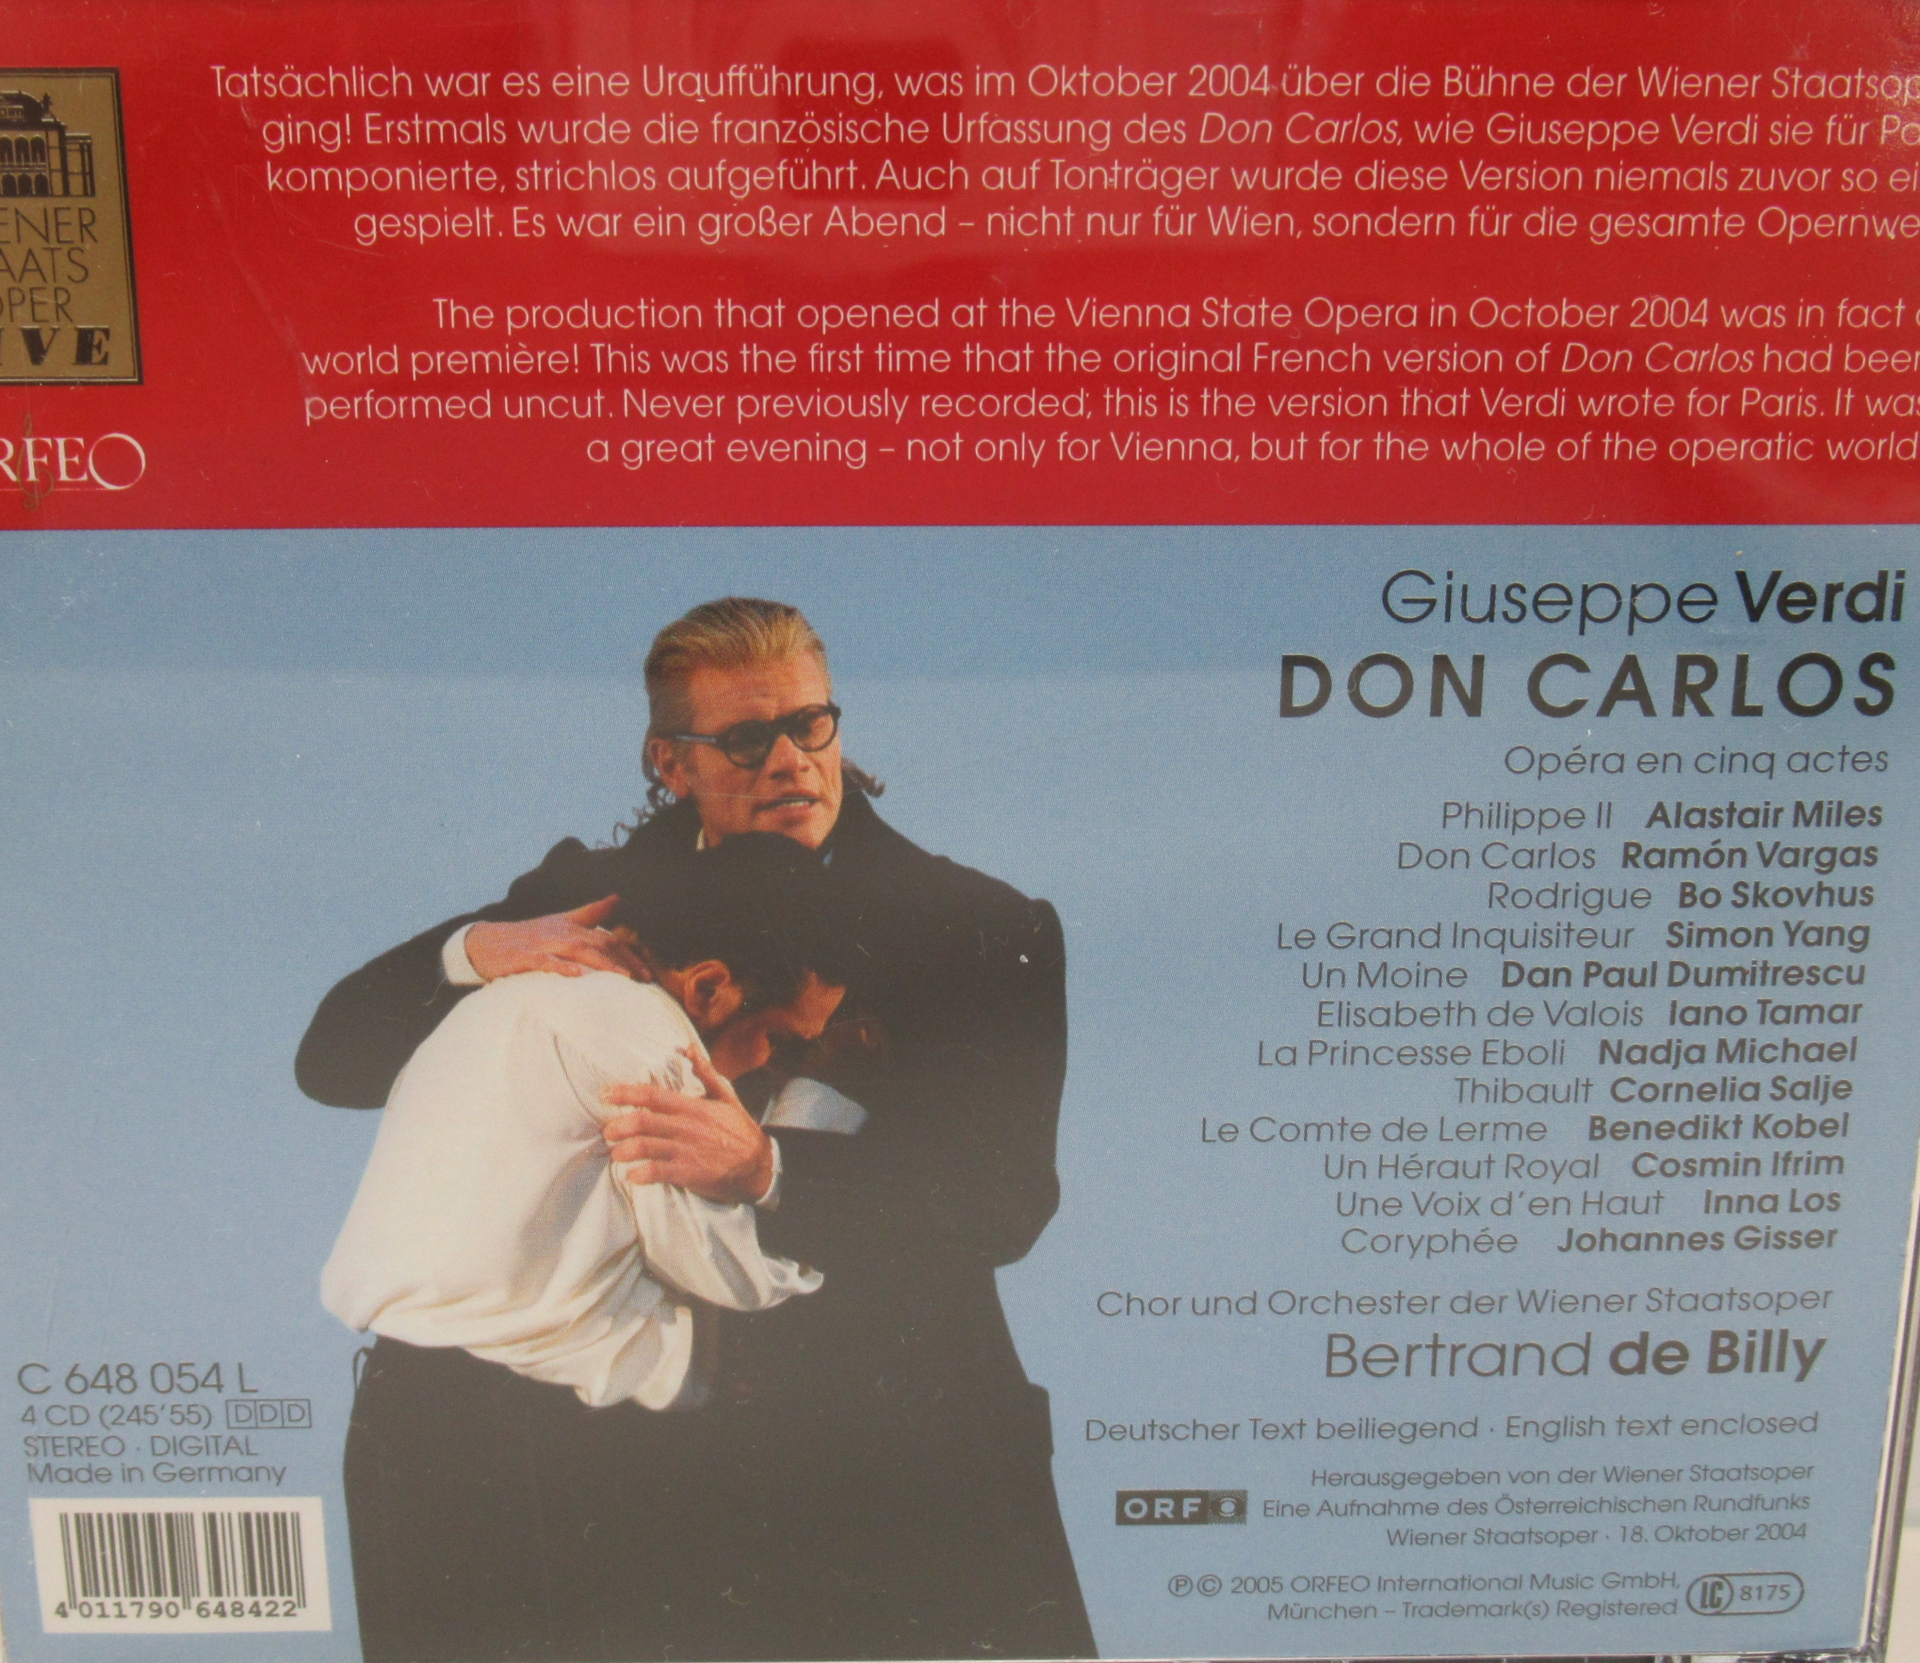 ヴェルディ作曲 ドン カルロ Don Carlo Vol 2 5月 21年 トリッチ トラッチ 静岡国際オペラコンクール